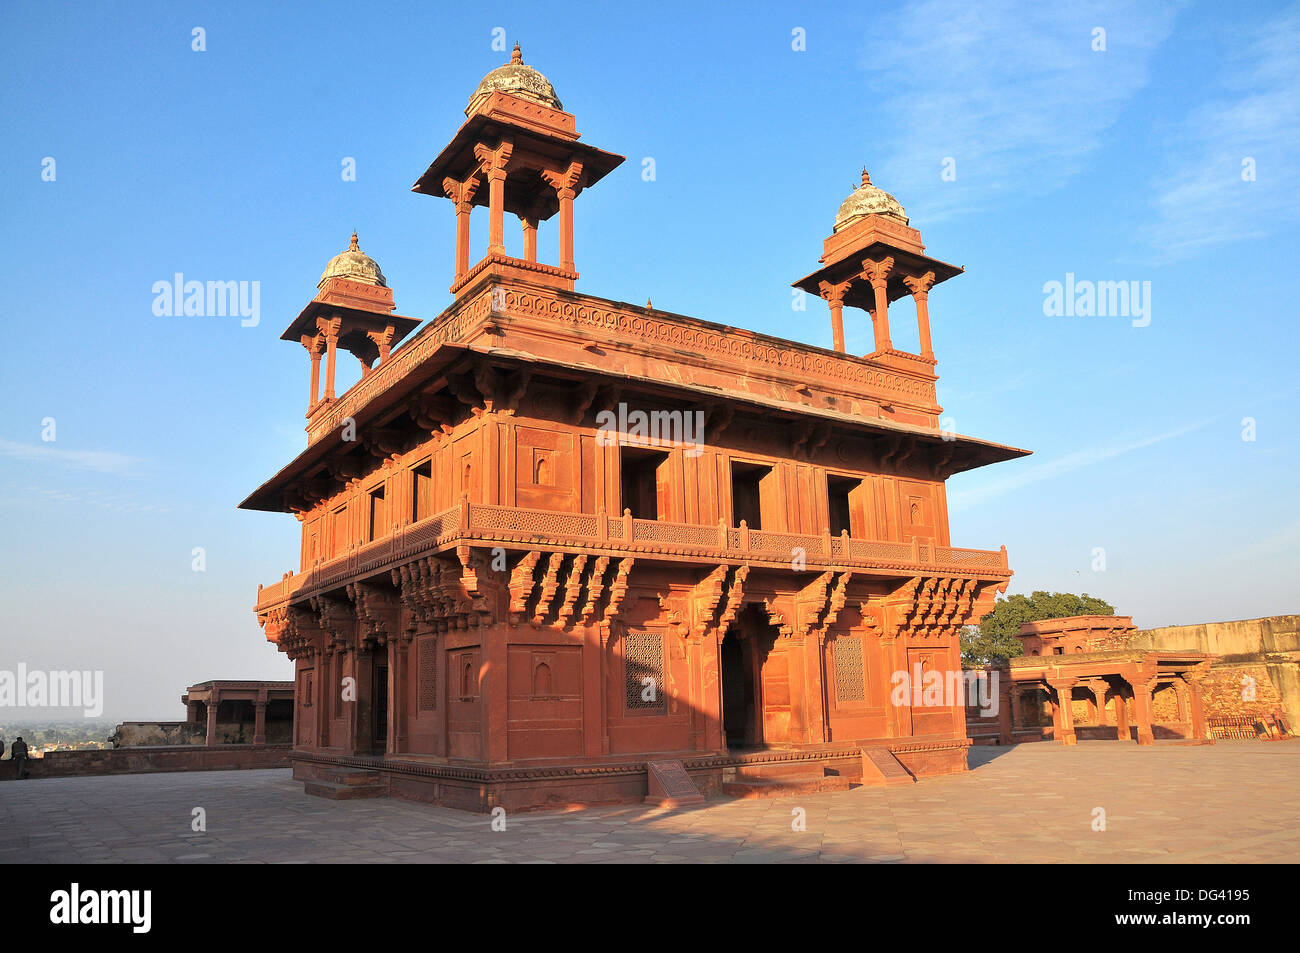 Fein gemeißelt Palast aus dem 16. Jahrhundert, Fatehpur Sikri, UNESCO-Weltkulturerbe, Uttar Pradesh, Indien, Asien Stockfoto